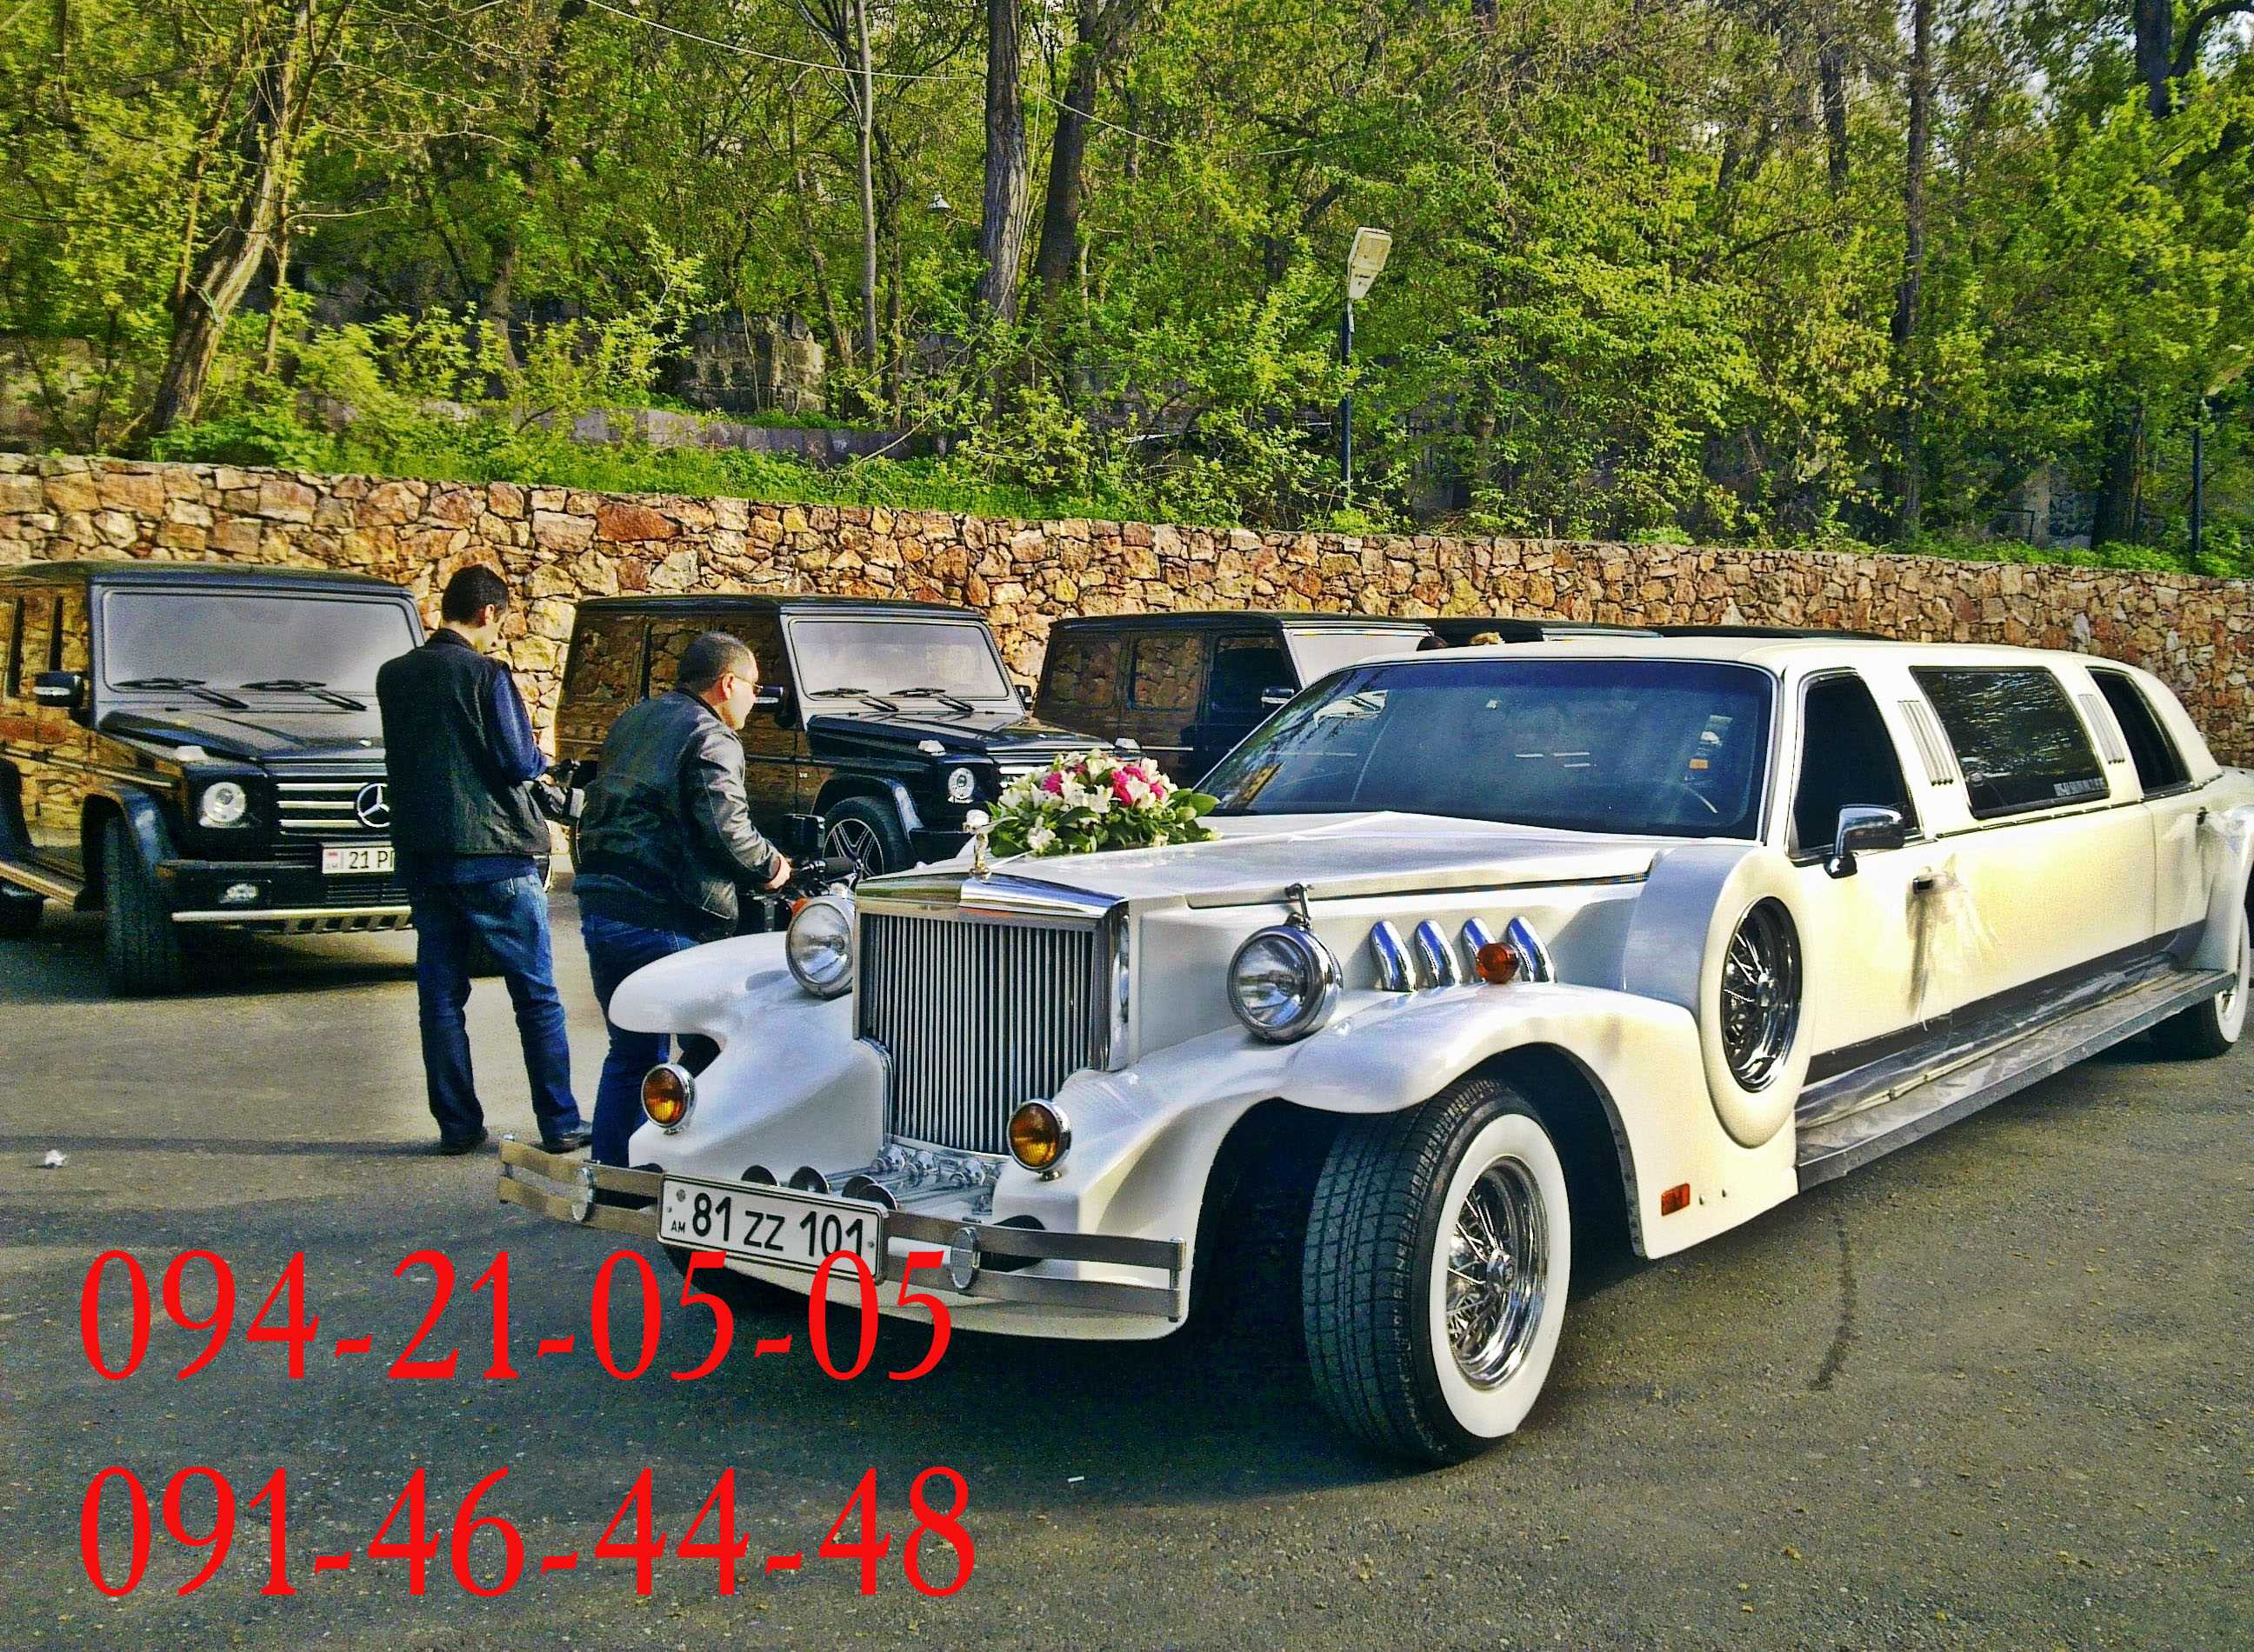 WEDDING CARS ARMENIA RENT A CAR ARMENIA RETRO CARS ARMENIA